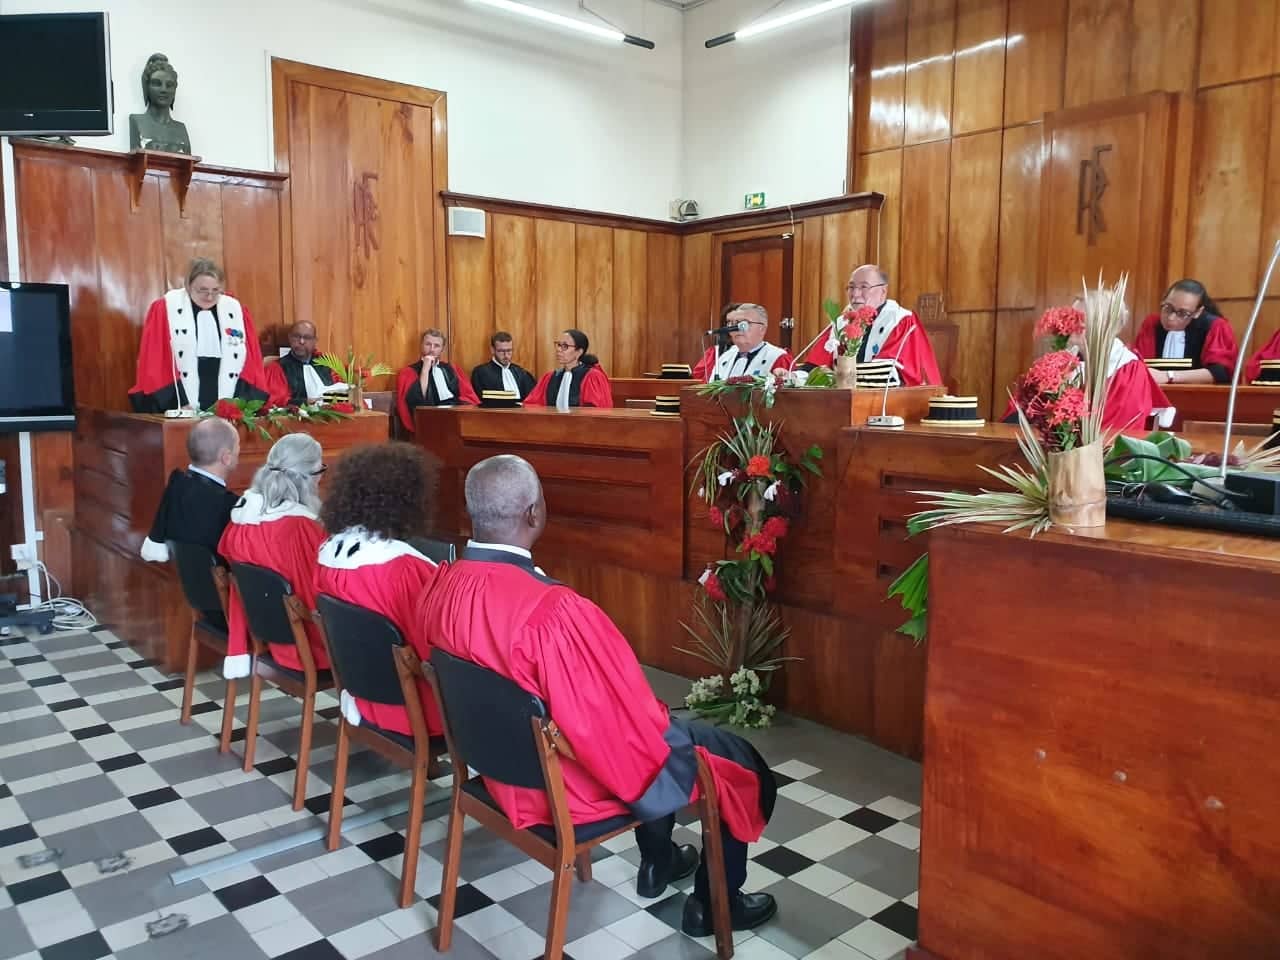     Installation de nouveaux magistrats à Basse-Terre 

